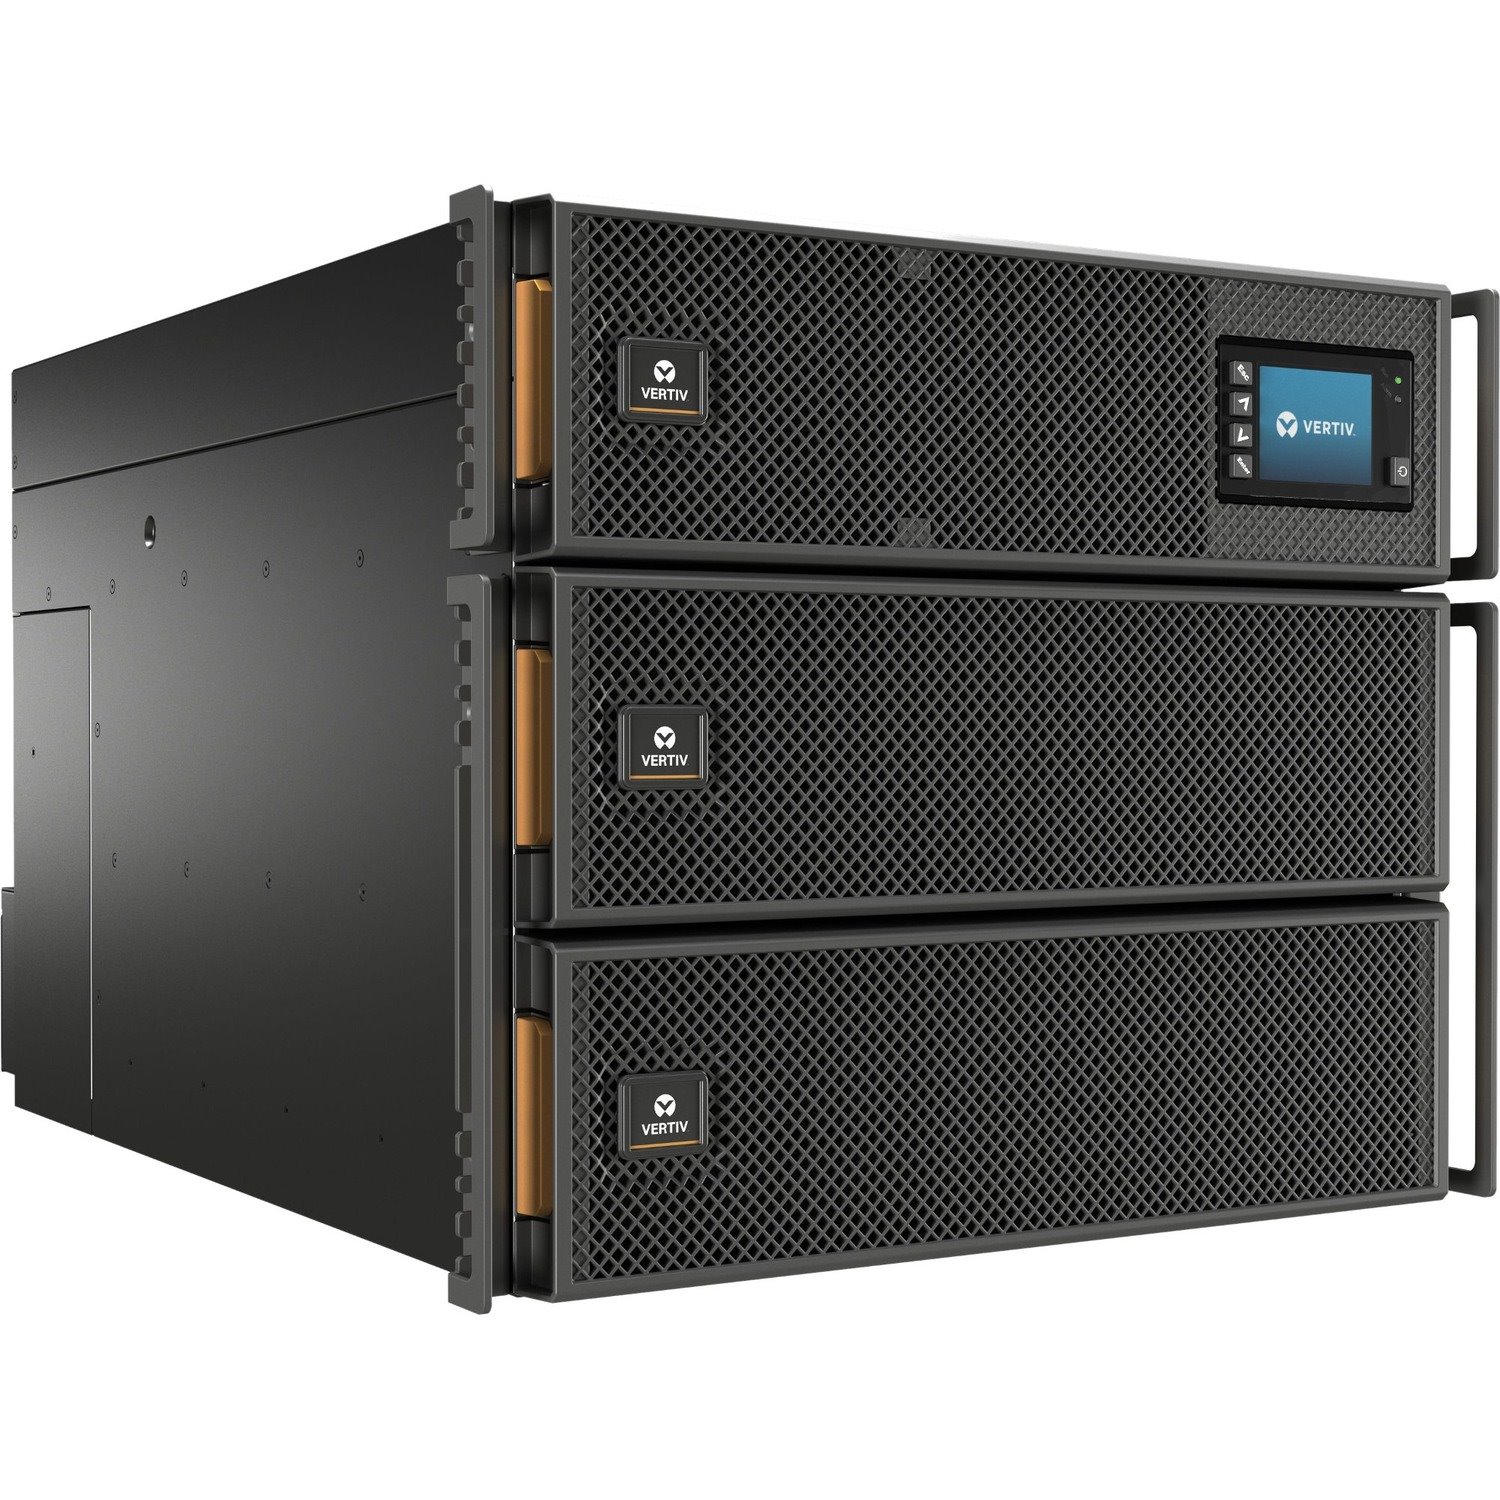 Vertiv Liebert GXT5 UPS - 20kVA/20kW 230V Online Double Conversion UPS